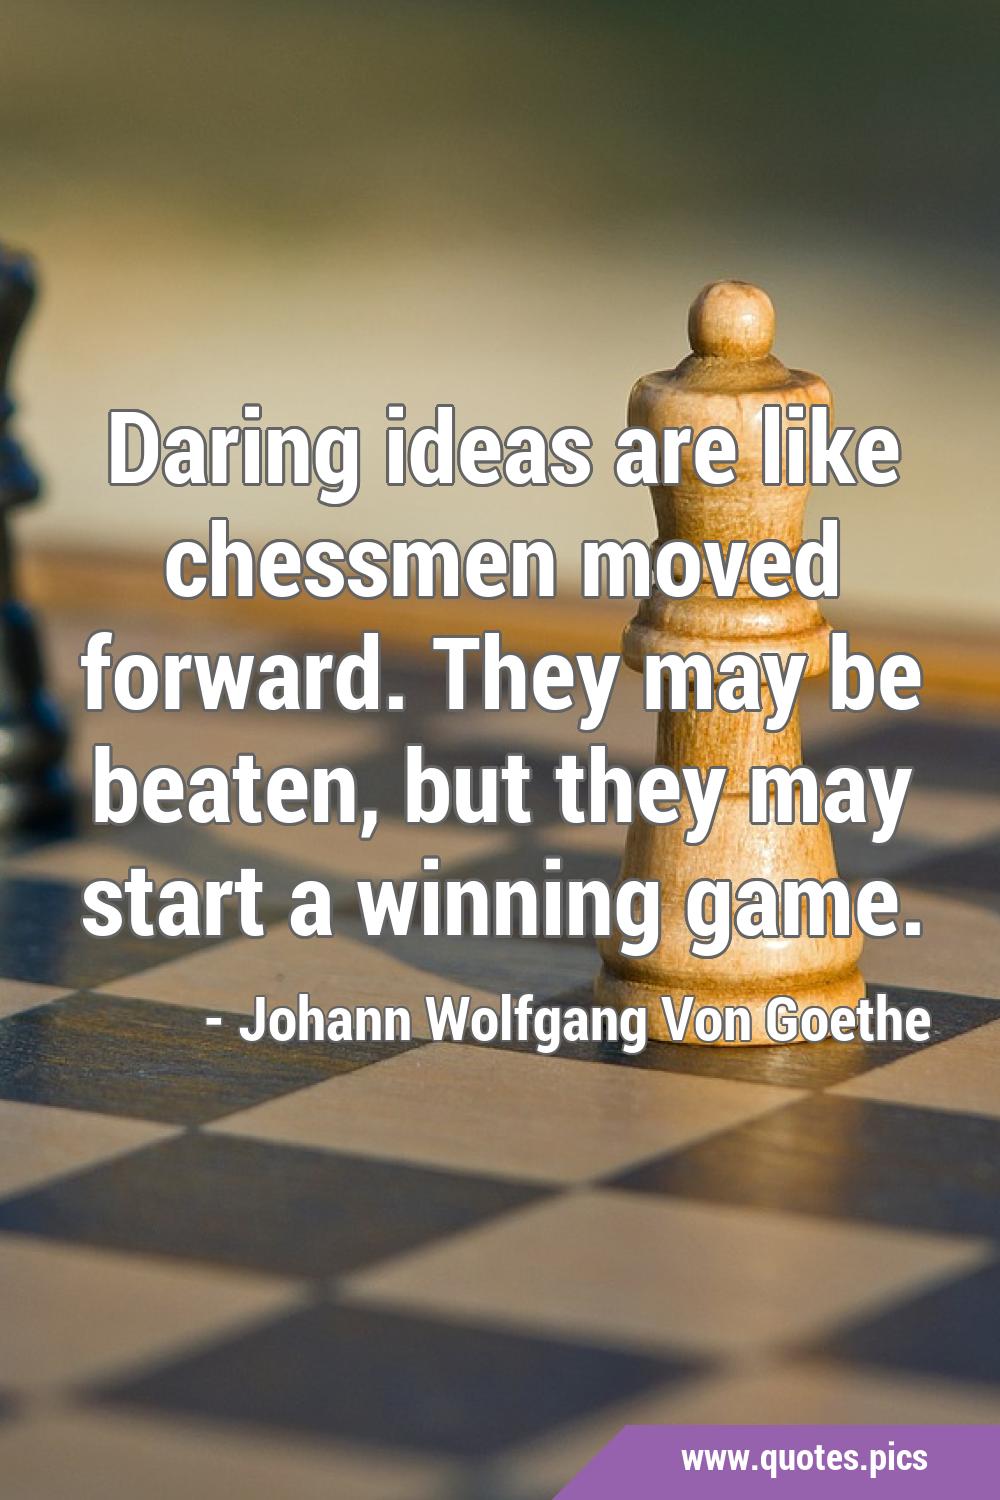 30 ideias de Frases de xadrez/chess phrases